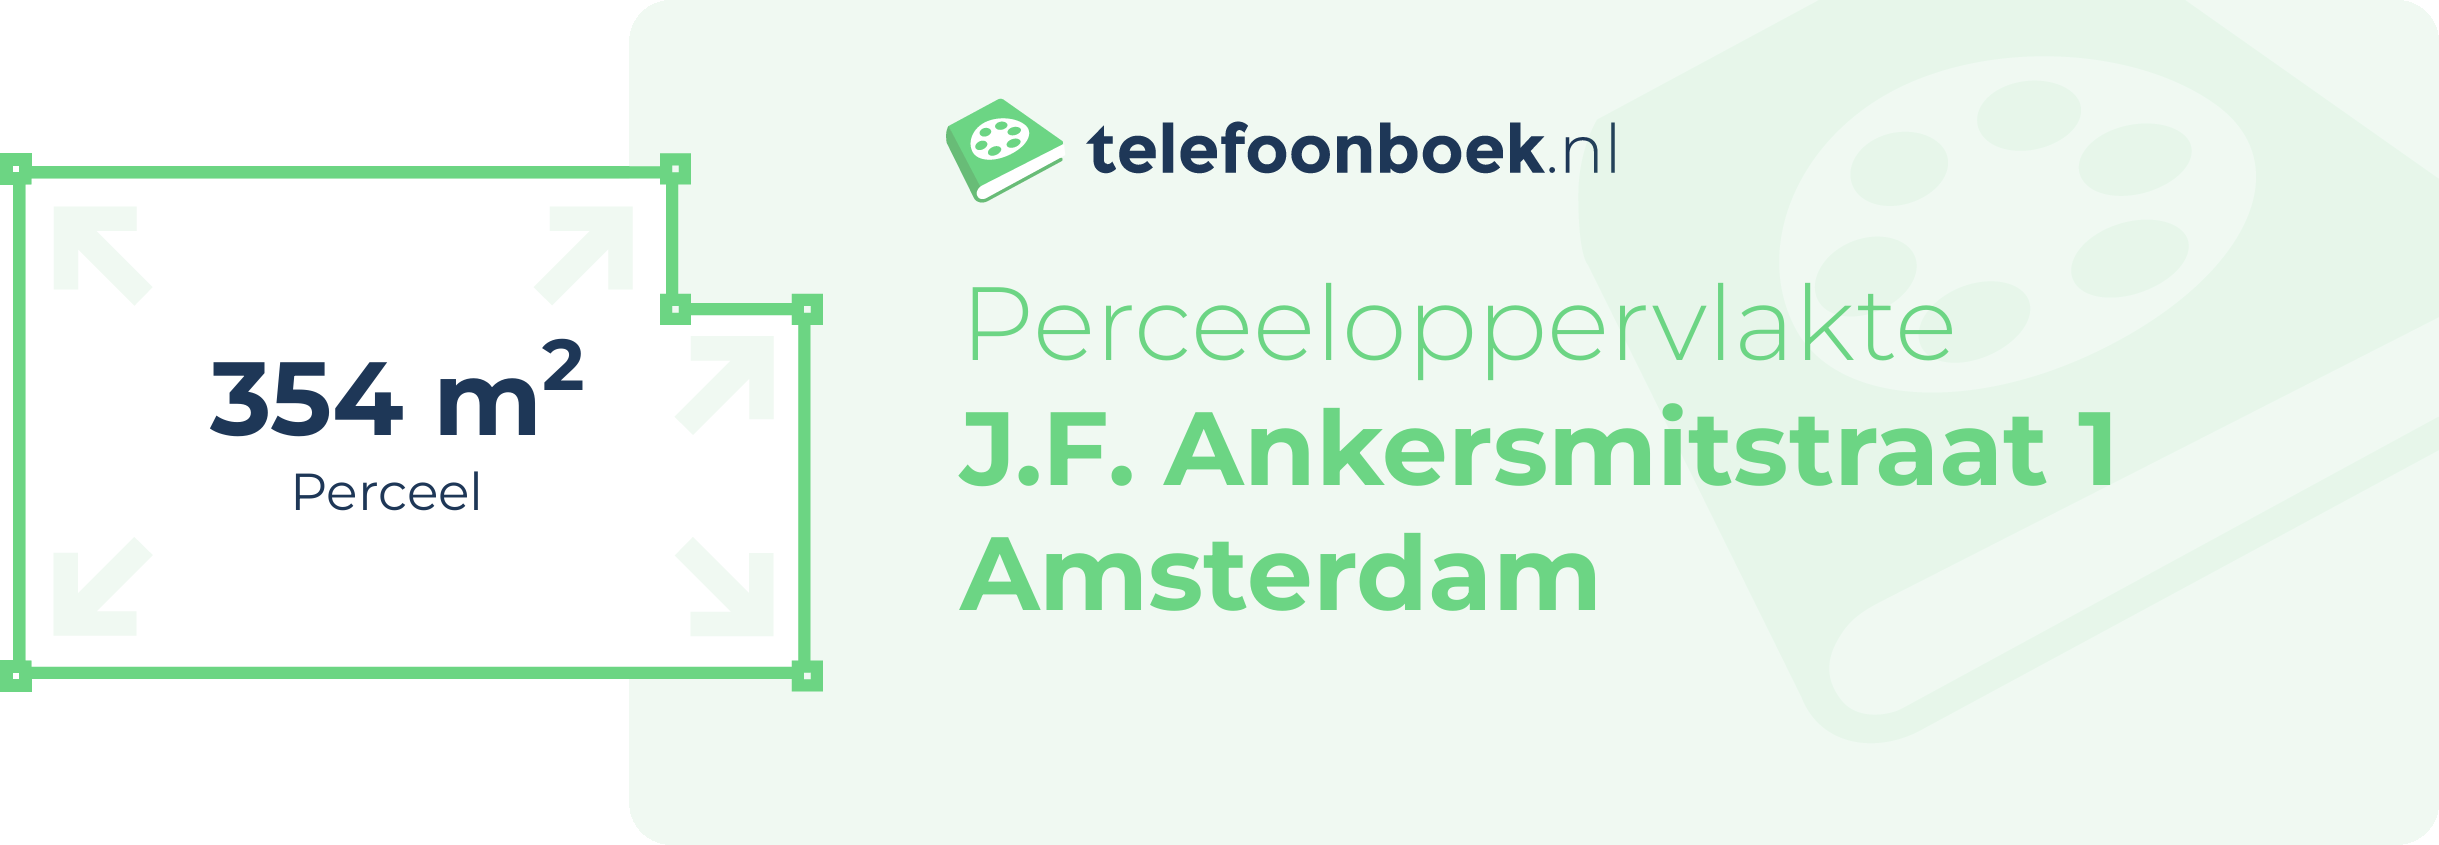 Perceeloppervlakte J.F. Ankersmitstraat 1 Amsterdam